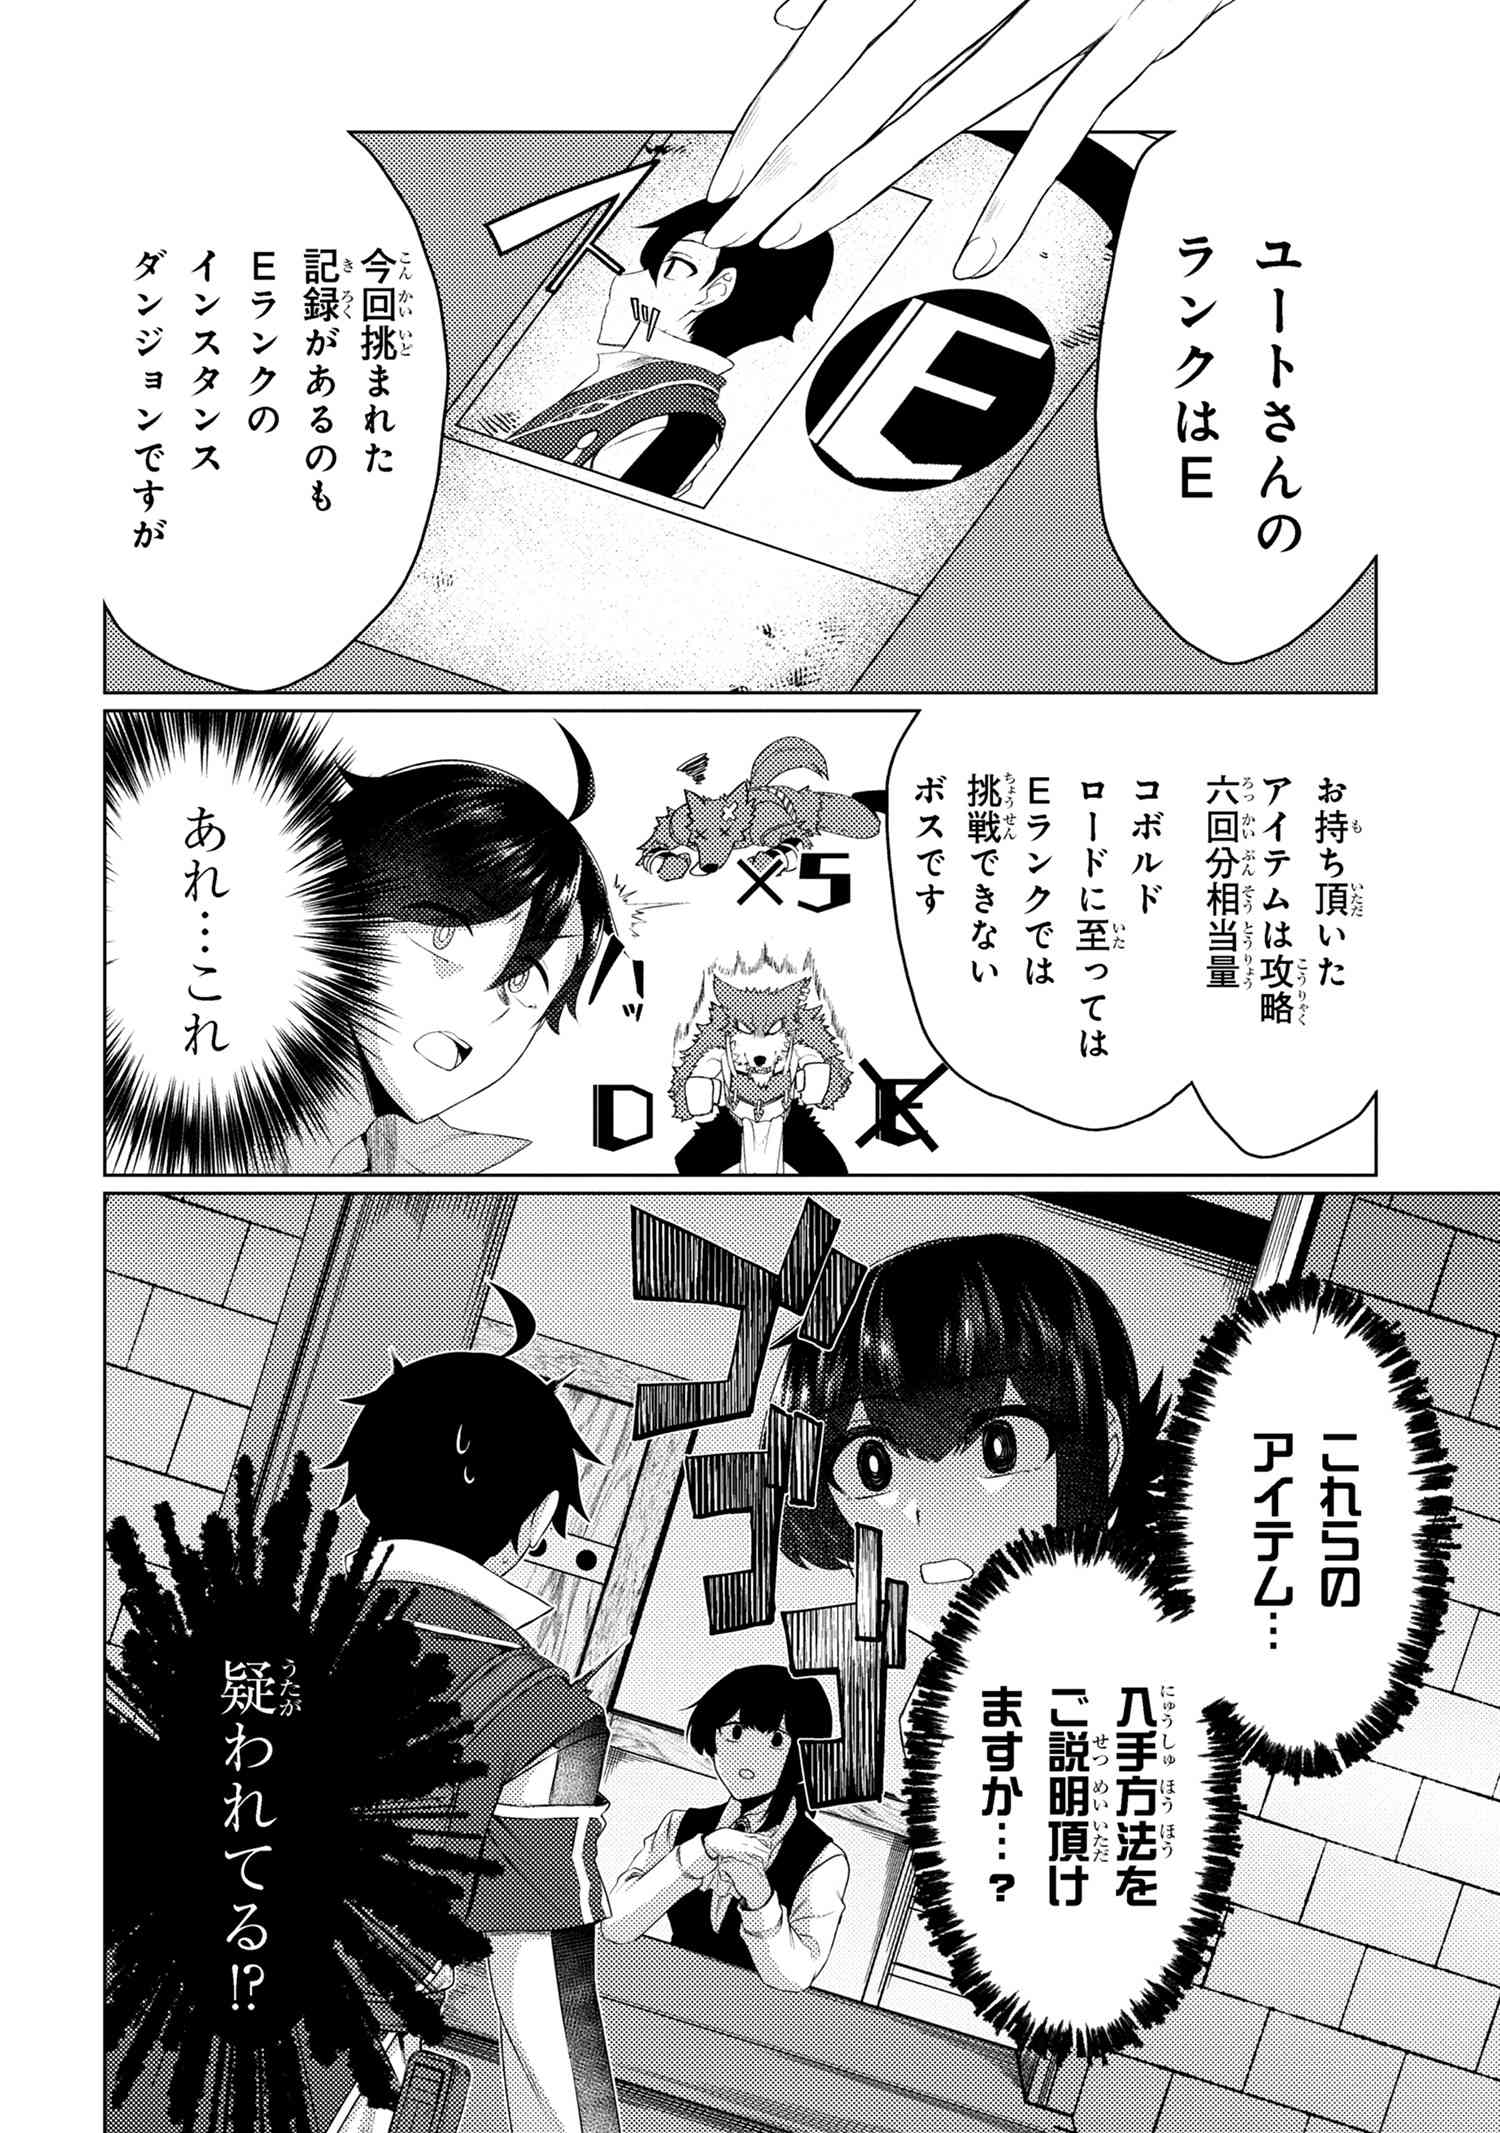 Ikikaetta Boukensha no Quest Koryaku Seikatsu - Chapter 7.1 - Page 2